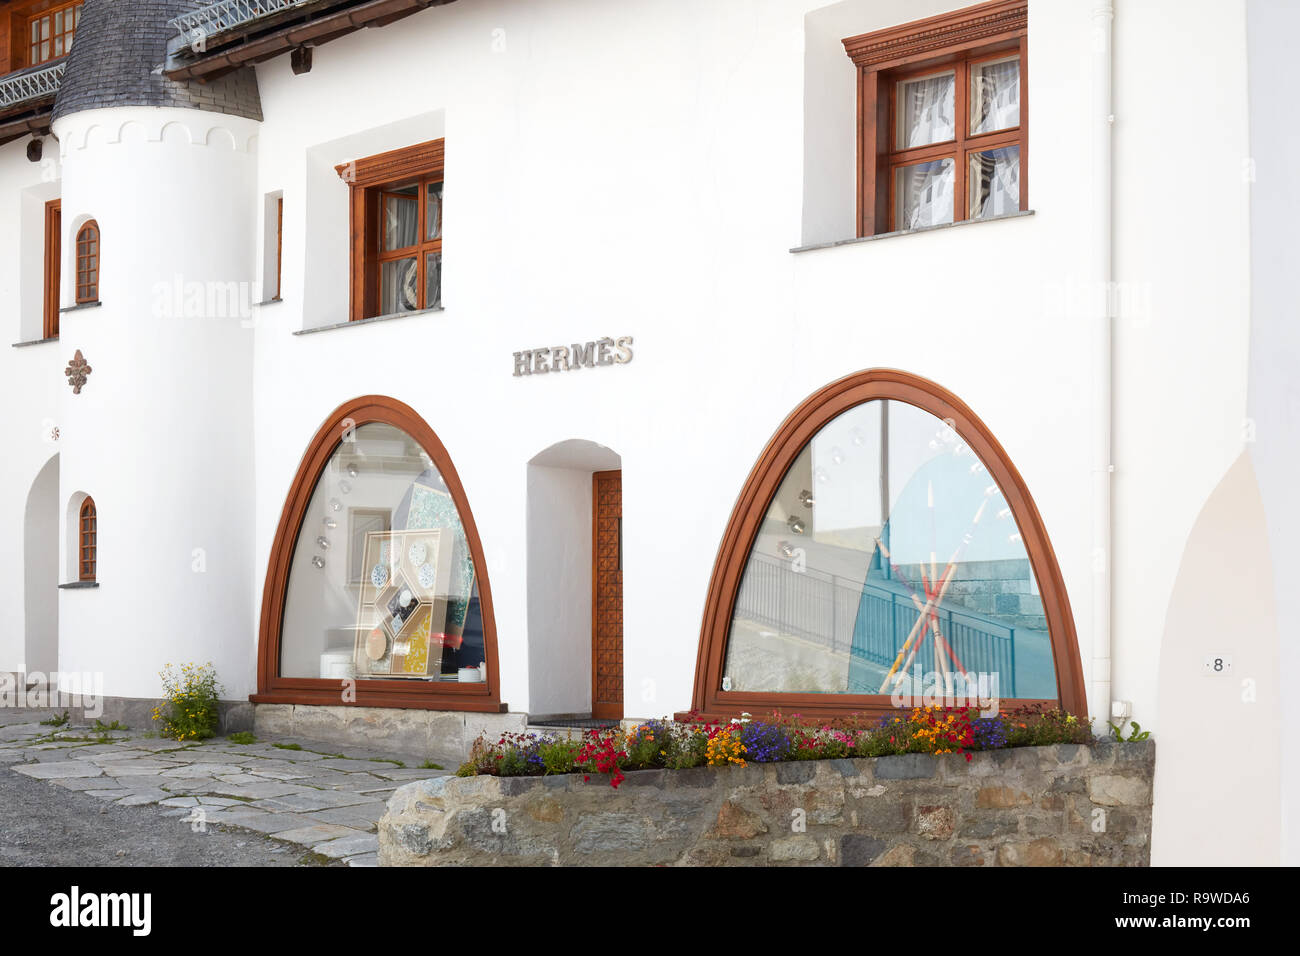 SANKT MORITZ, SWITZERLAND - AUGUST 16, 2018: Hermes luxury store in a sunny summer day in Sankt Moritz, Switzerland Stock Photo